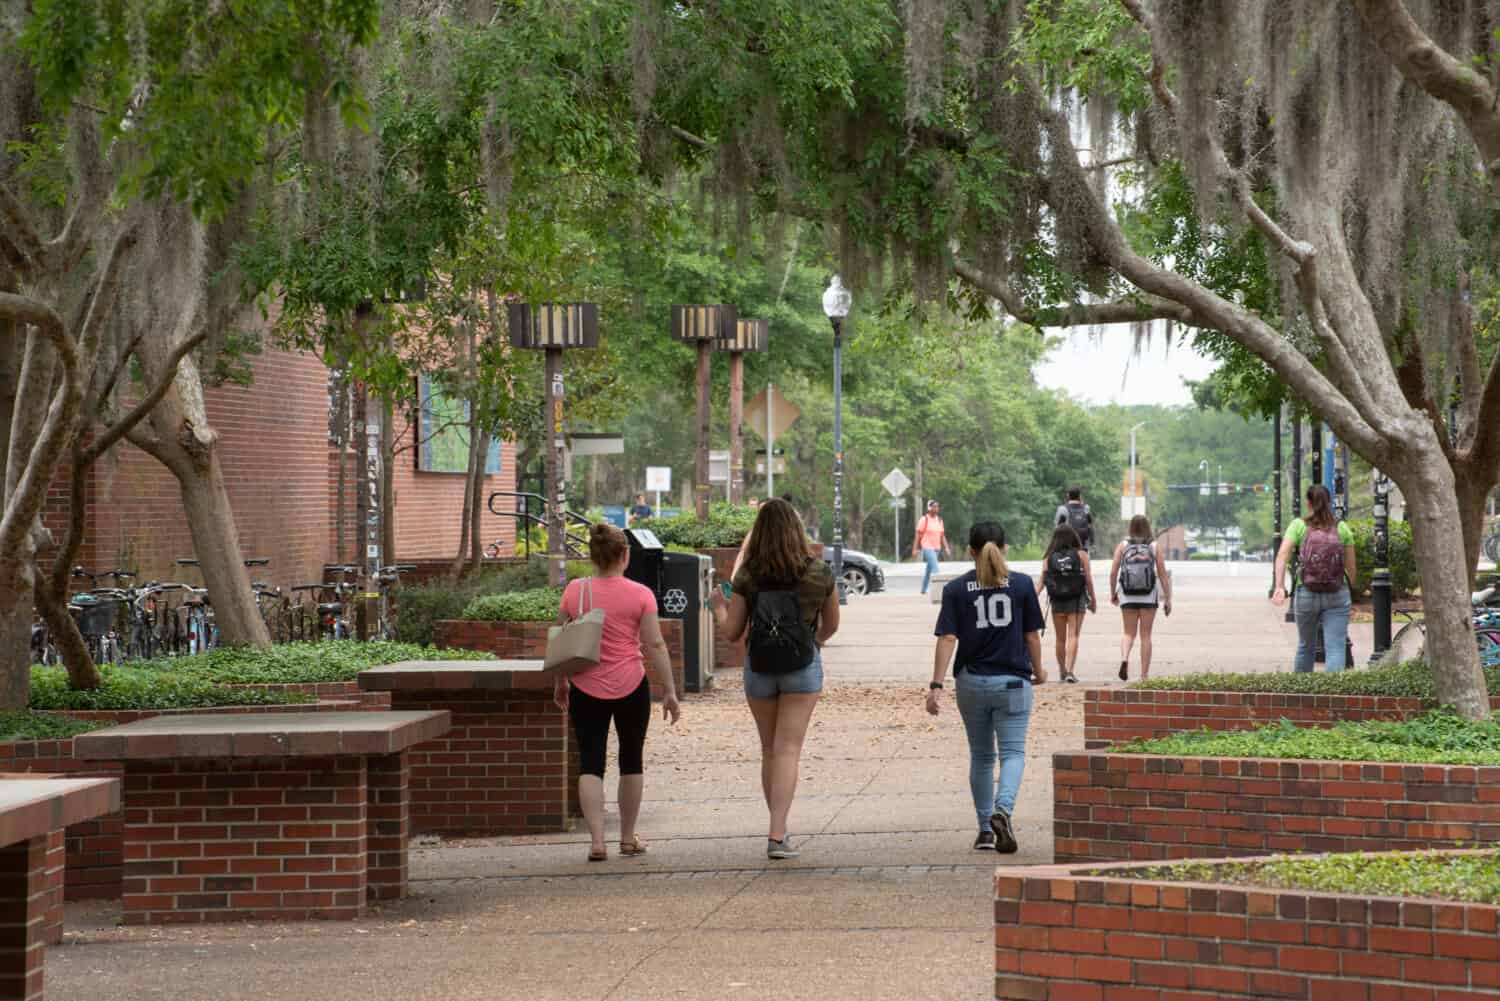 College students walk across campus between classes